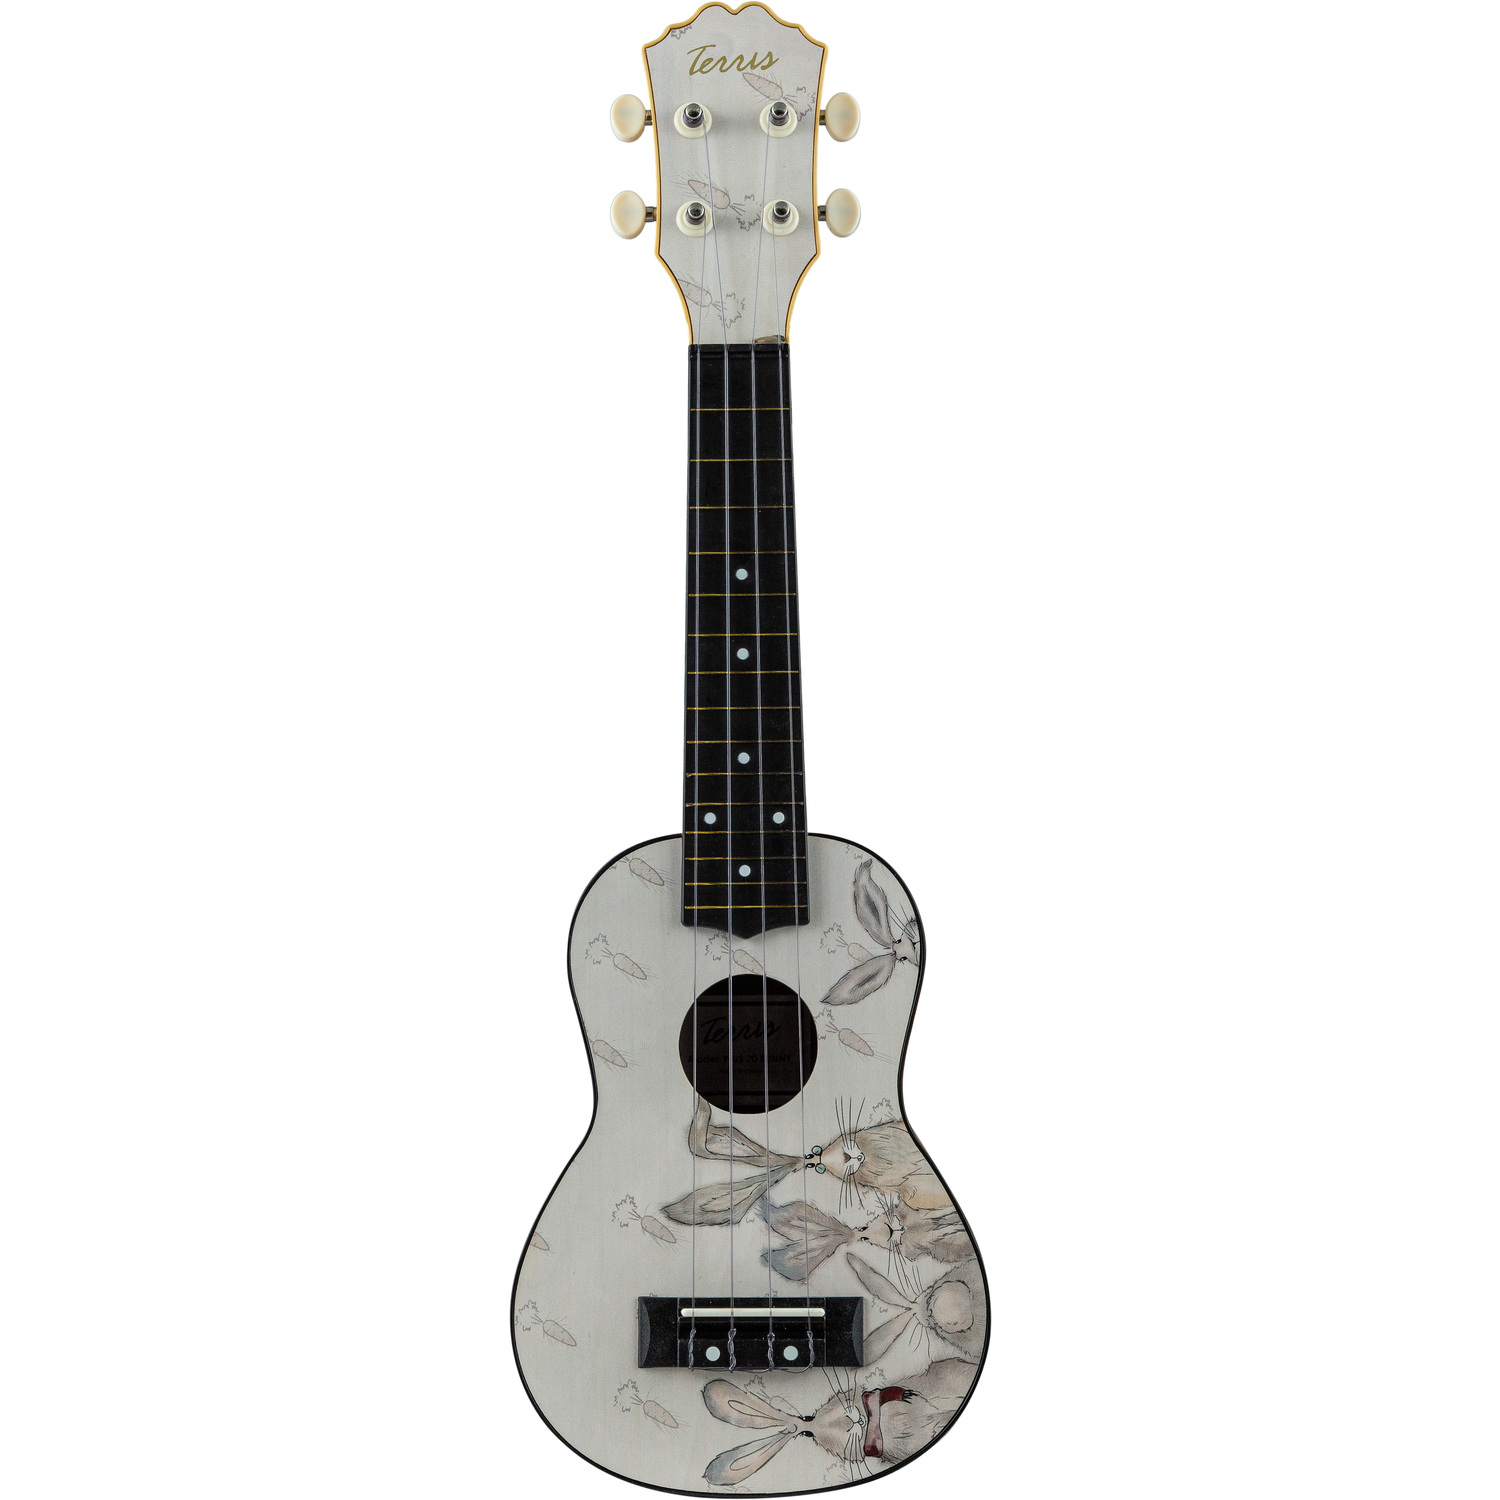 Гитара гавайская Terris Укулеле сопрано PLUS-70 BUNNY верхняя дека липа корпус пластик рисунок кролик - фото 6